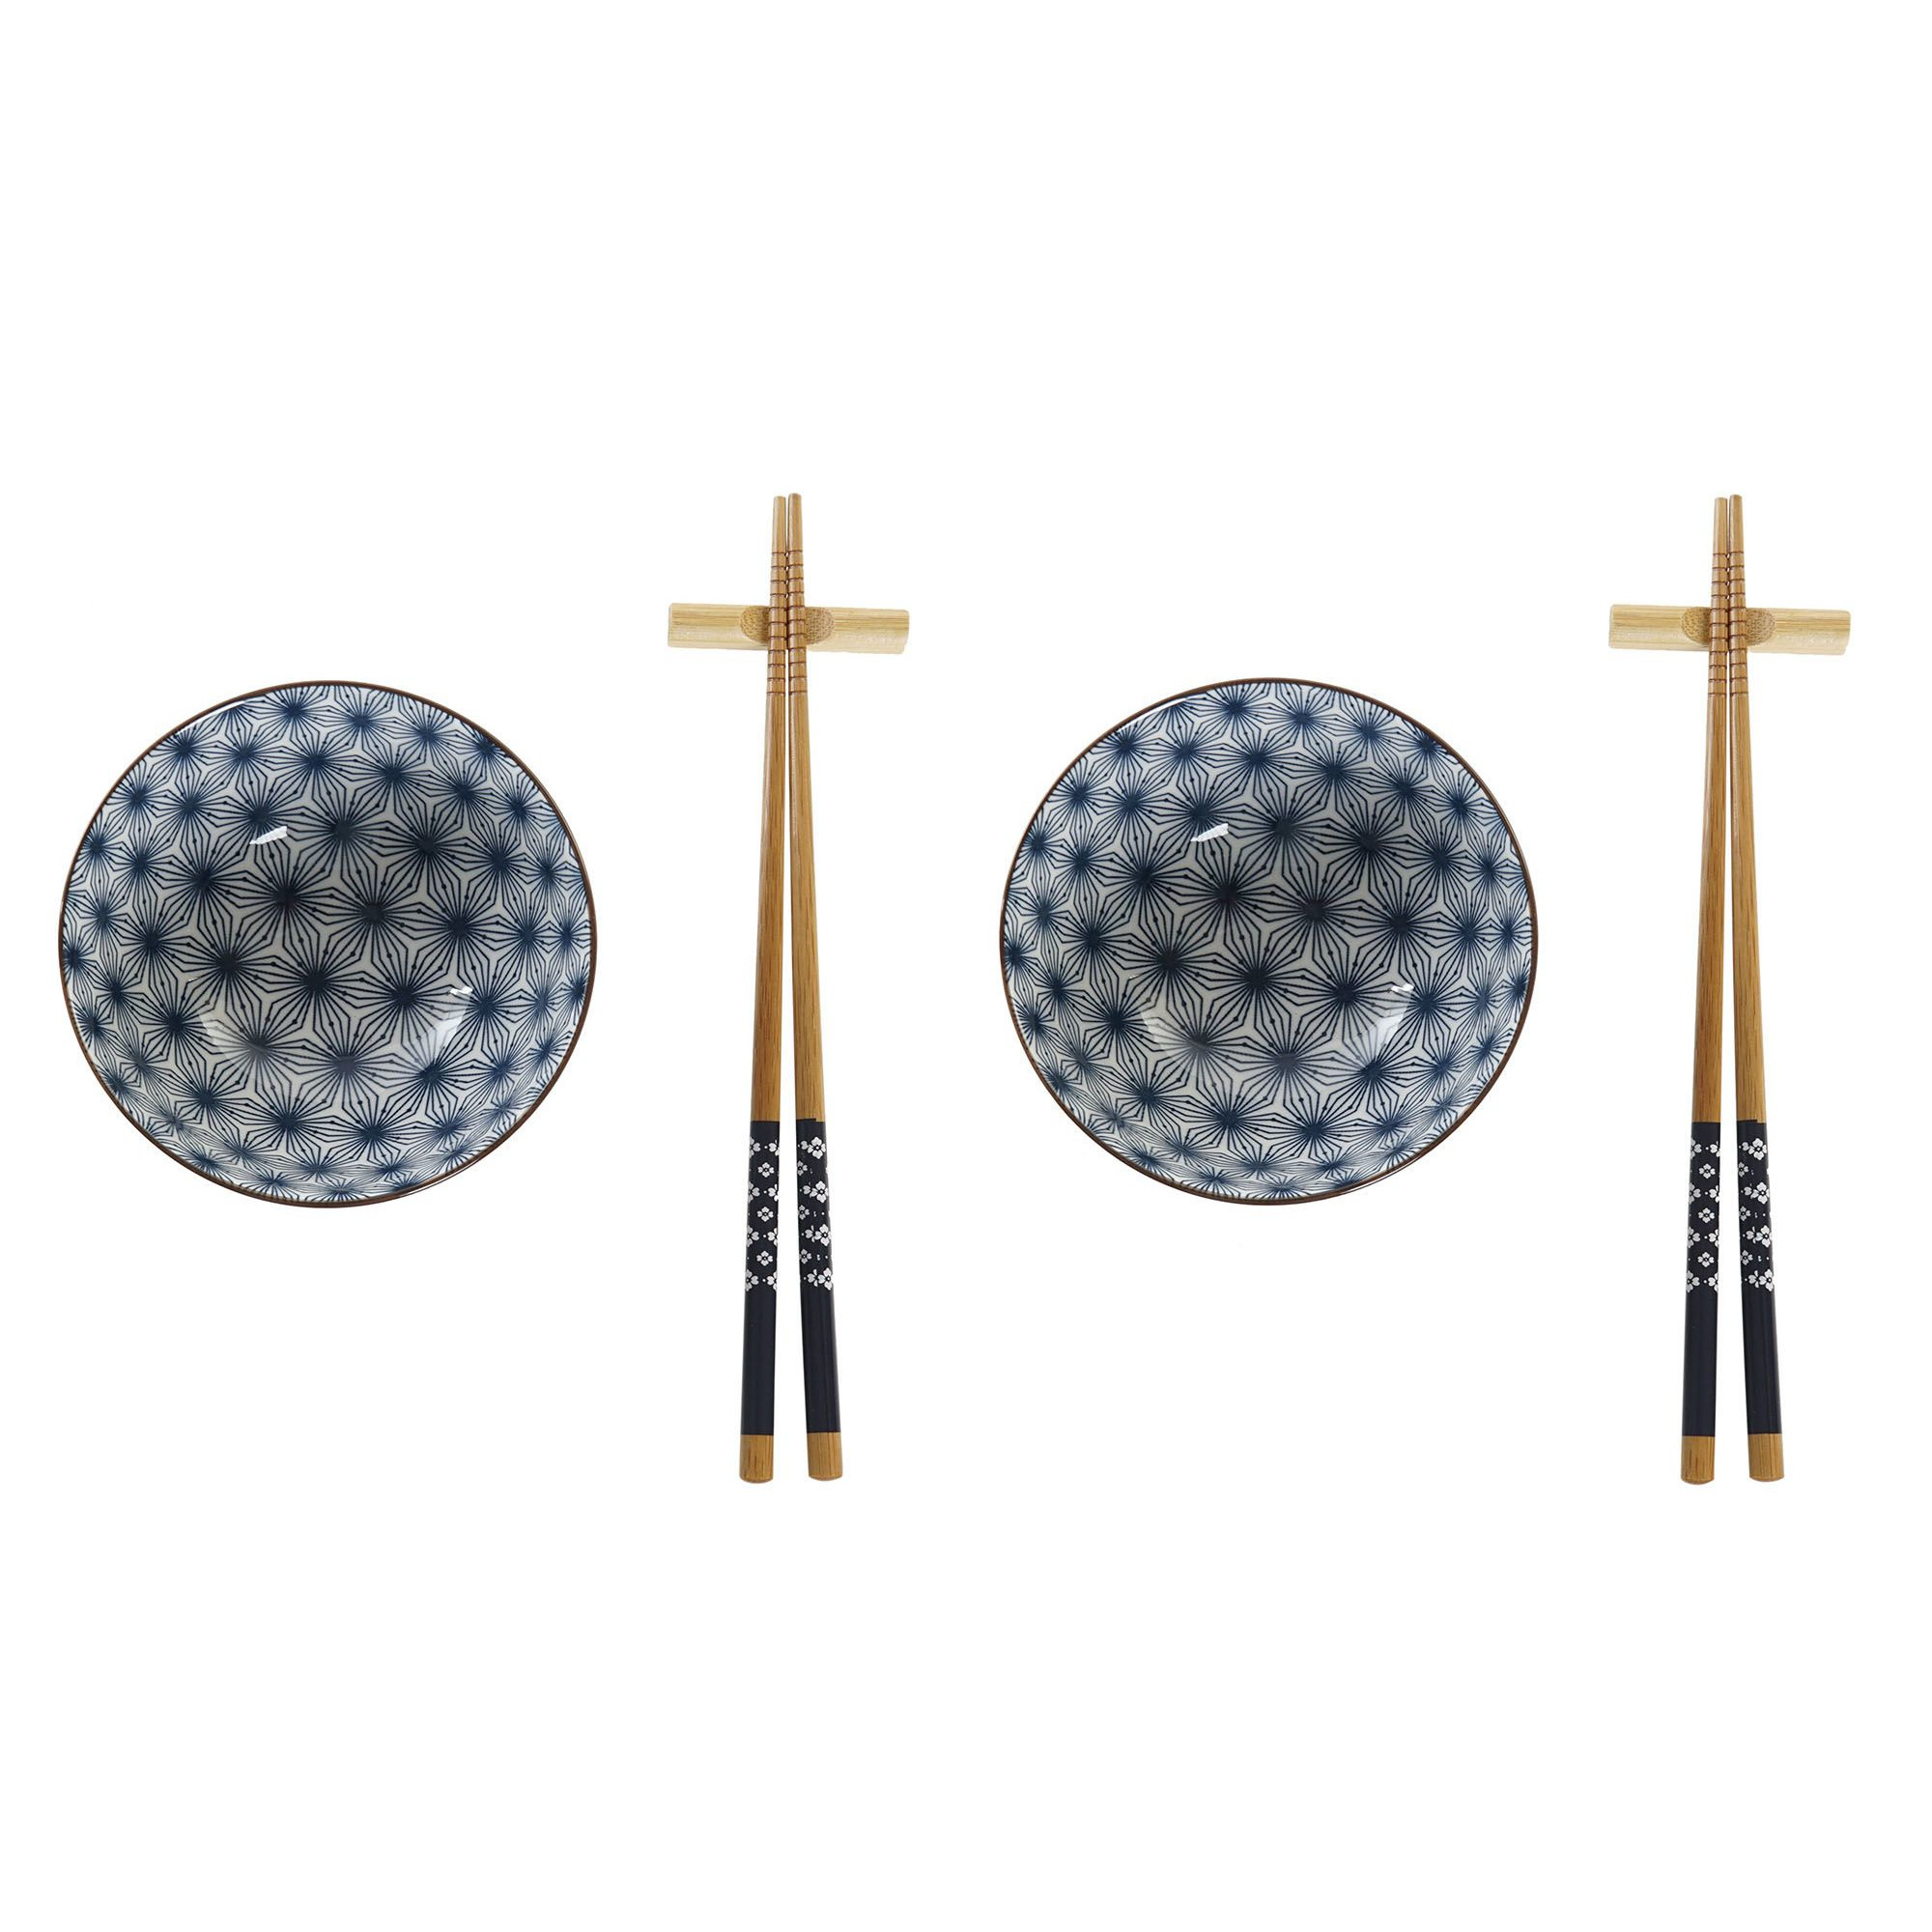 Items 6-delige sushi serveer set aardewerk voor 2 personen blauw/wit -